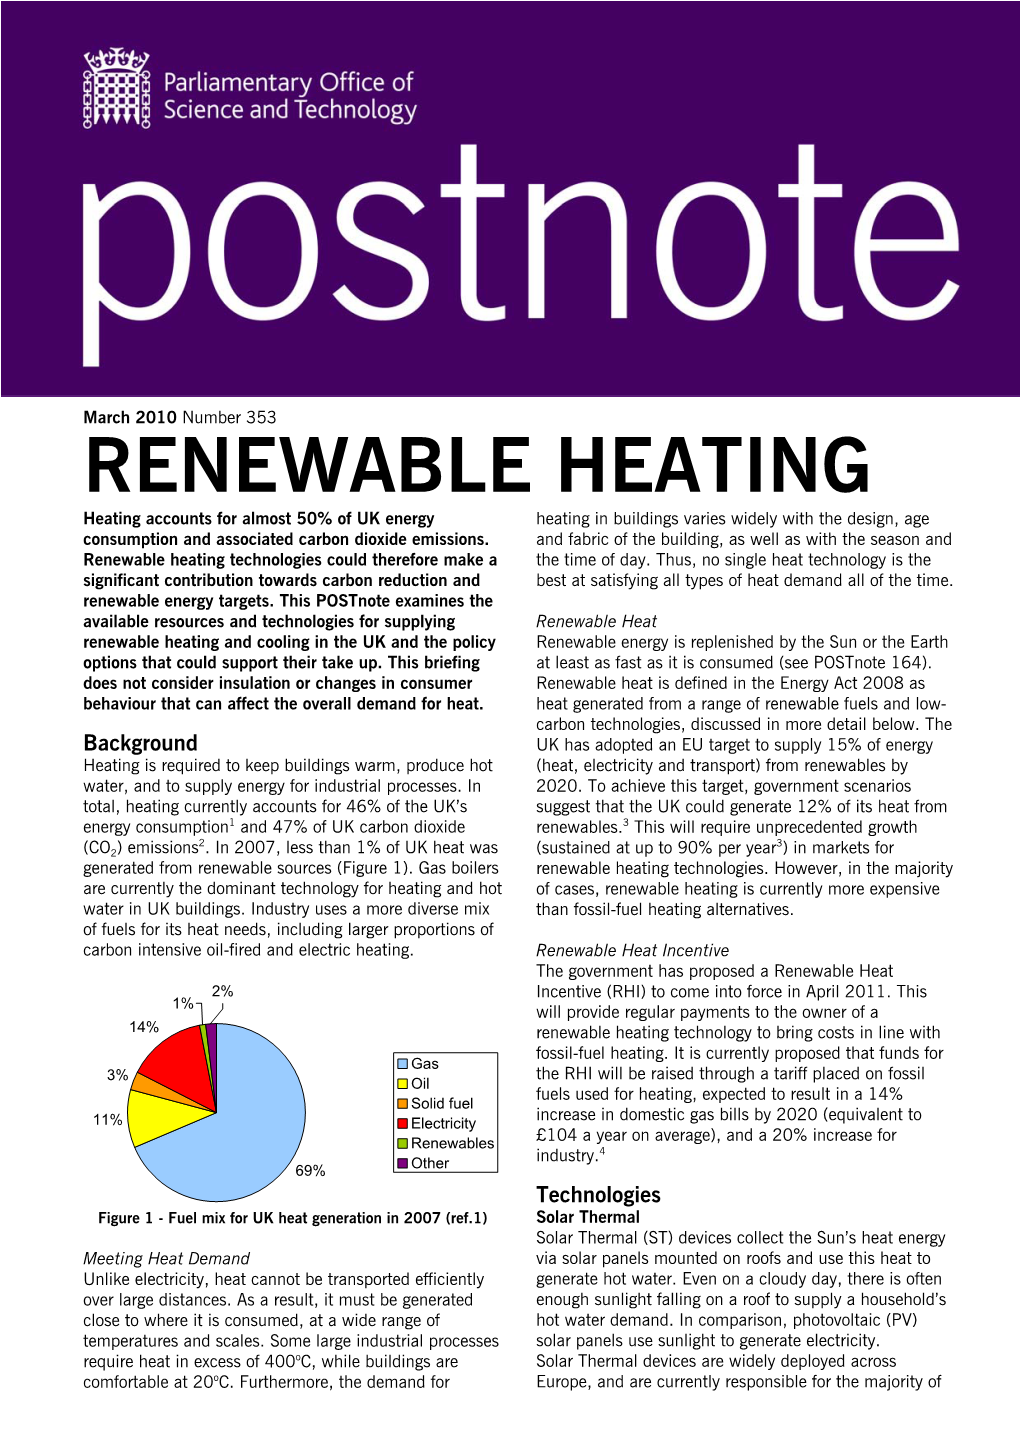 Renewable Heating